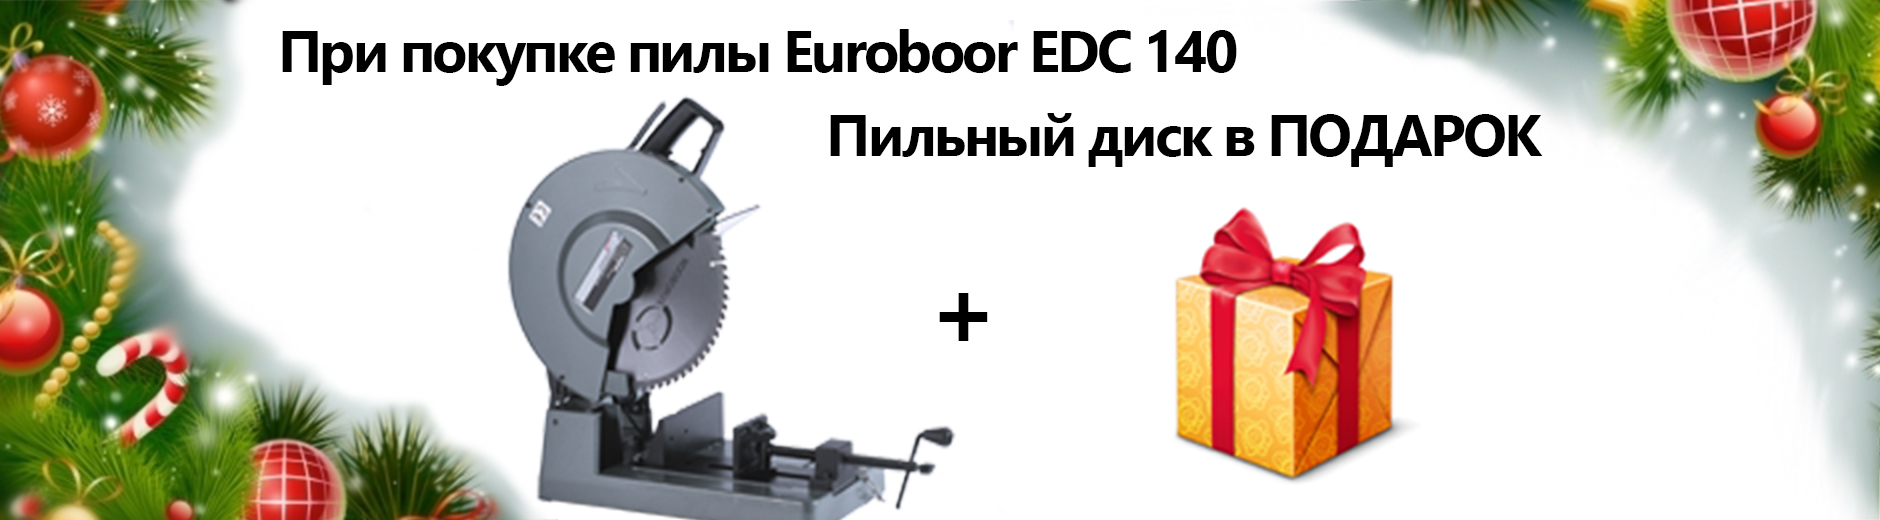 При заказе пилы Euroboor EDC 140 диск в подарок